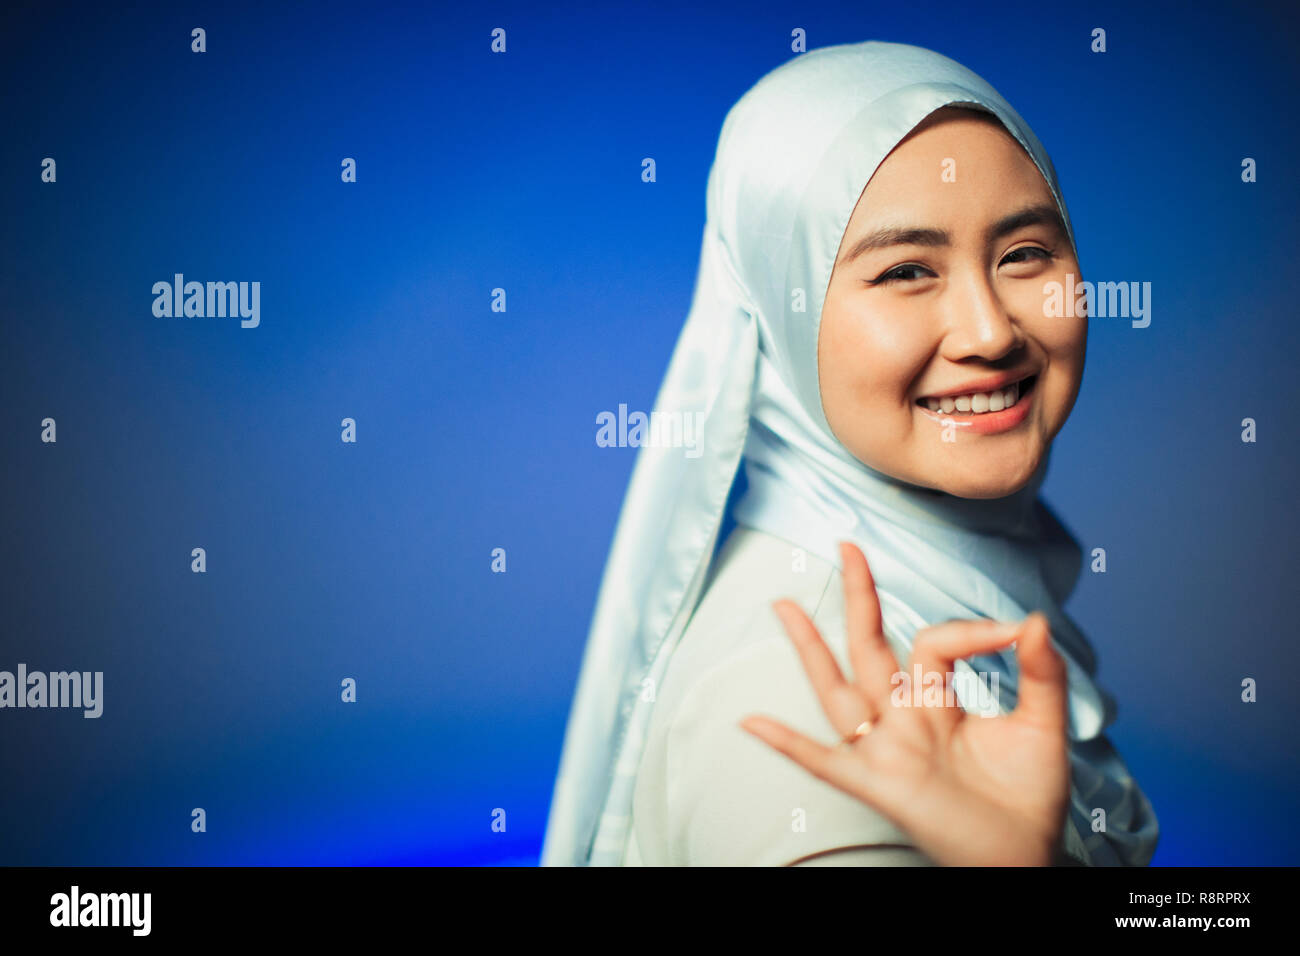 Portrait souriant, confiant jeune femme en hijab gesturing OK Banque D'Images